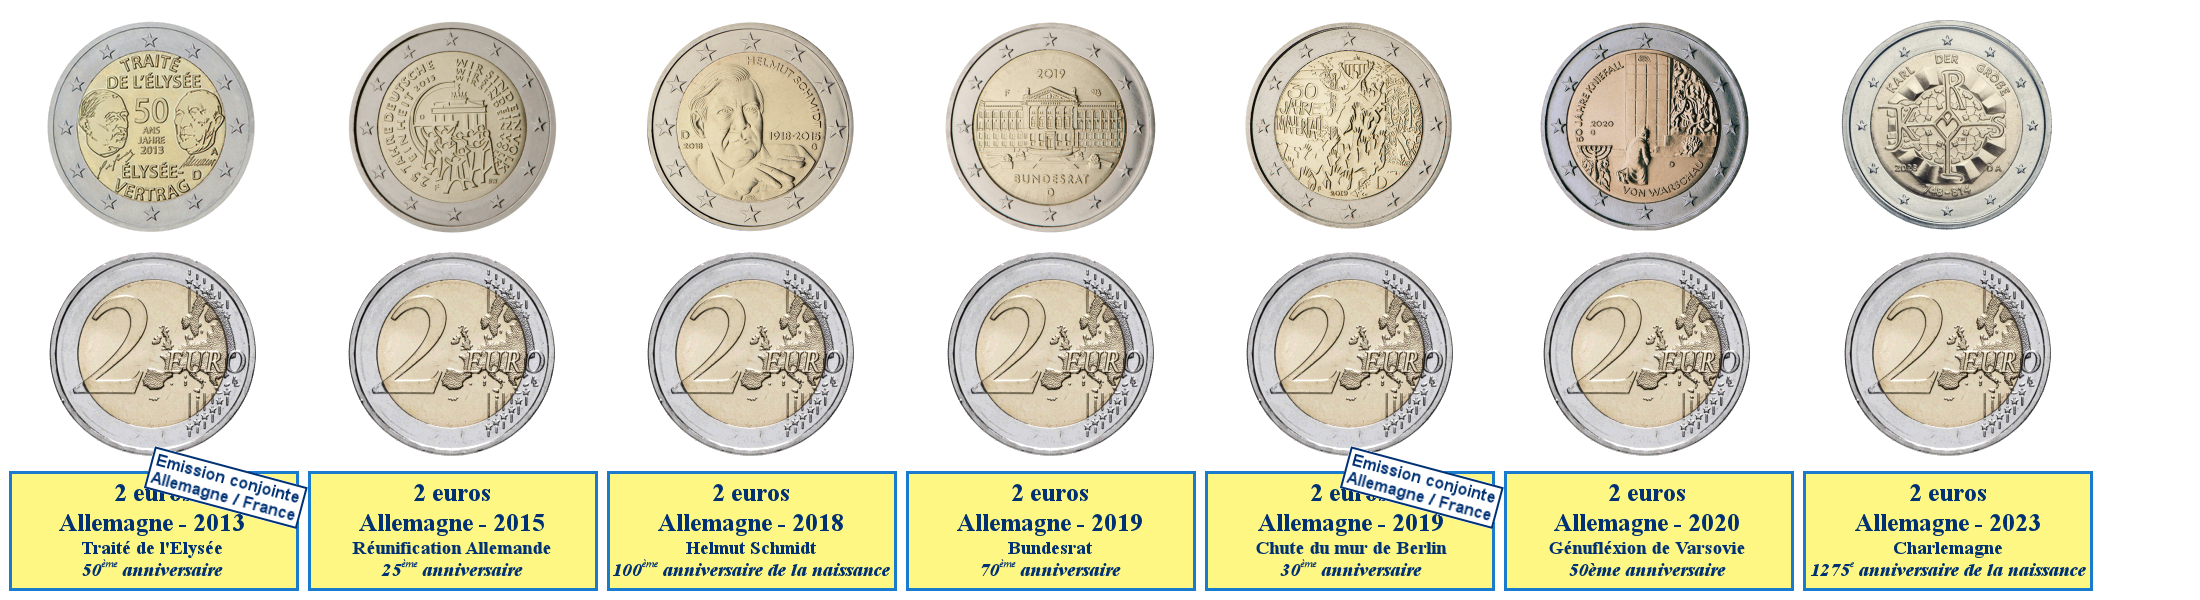 Photos de pièces de monnaies de 2 euros commémoratives allemandes